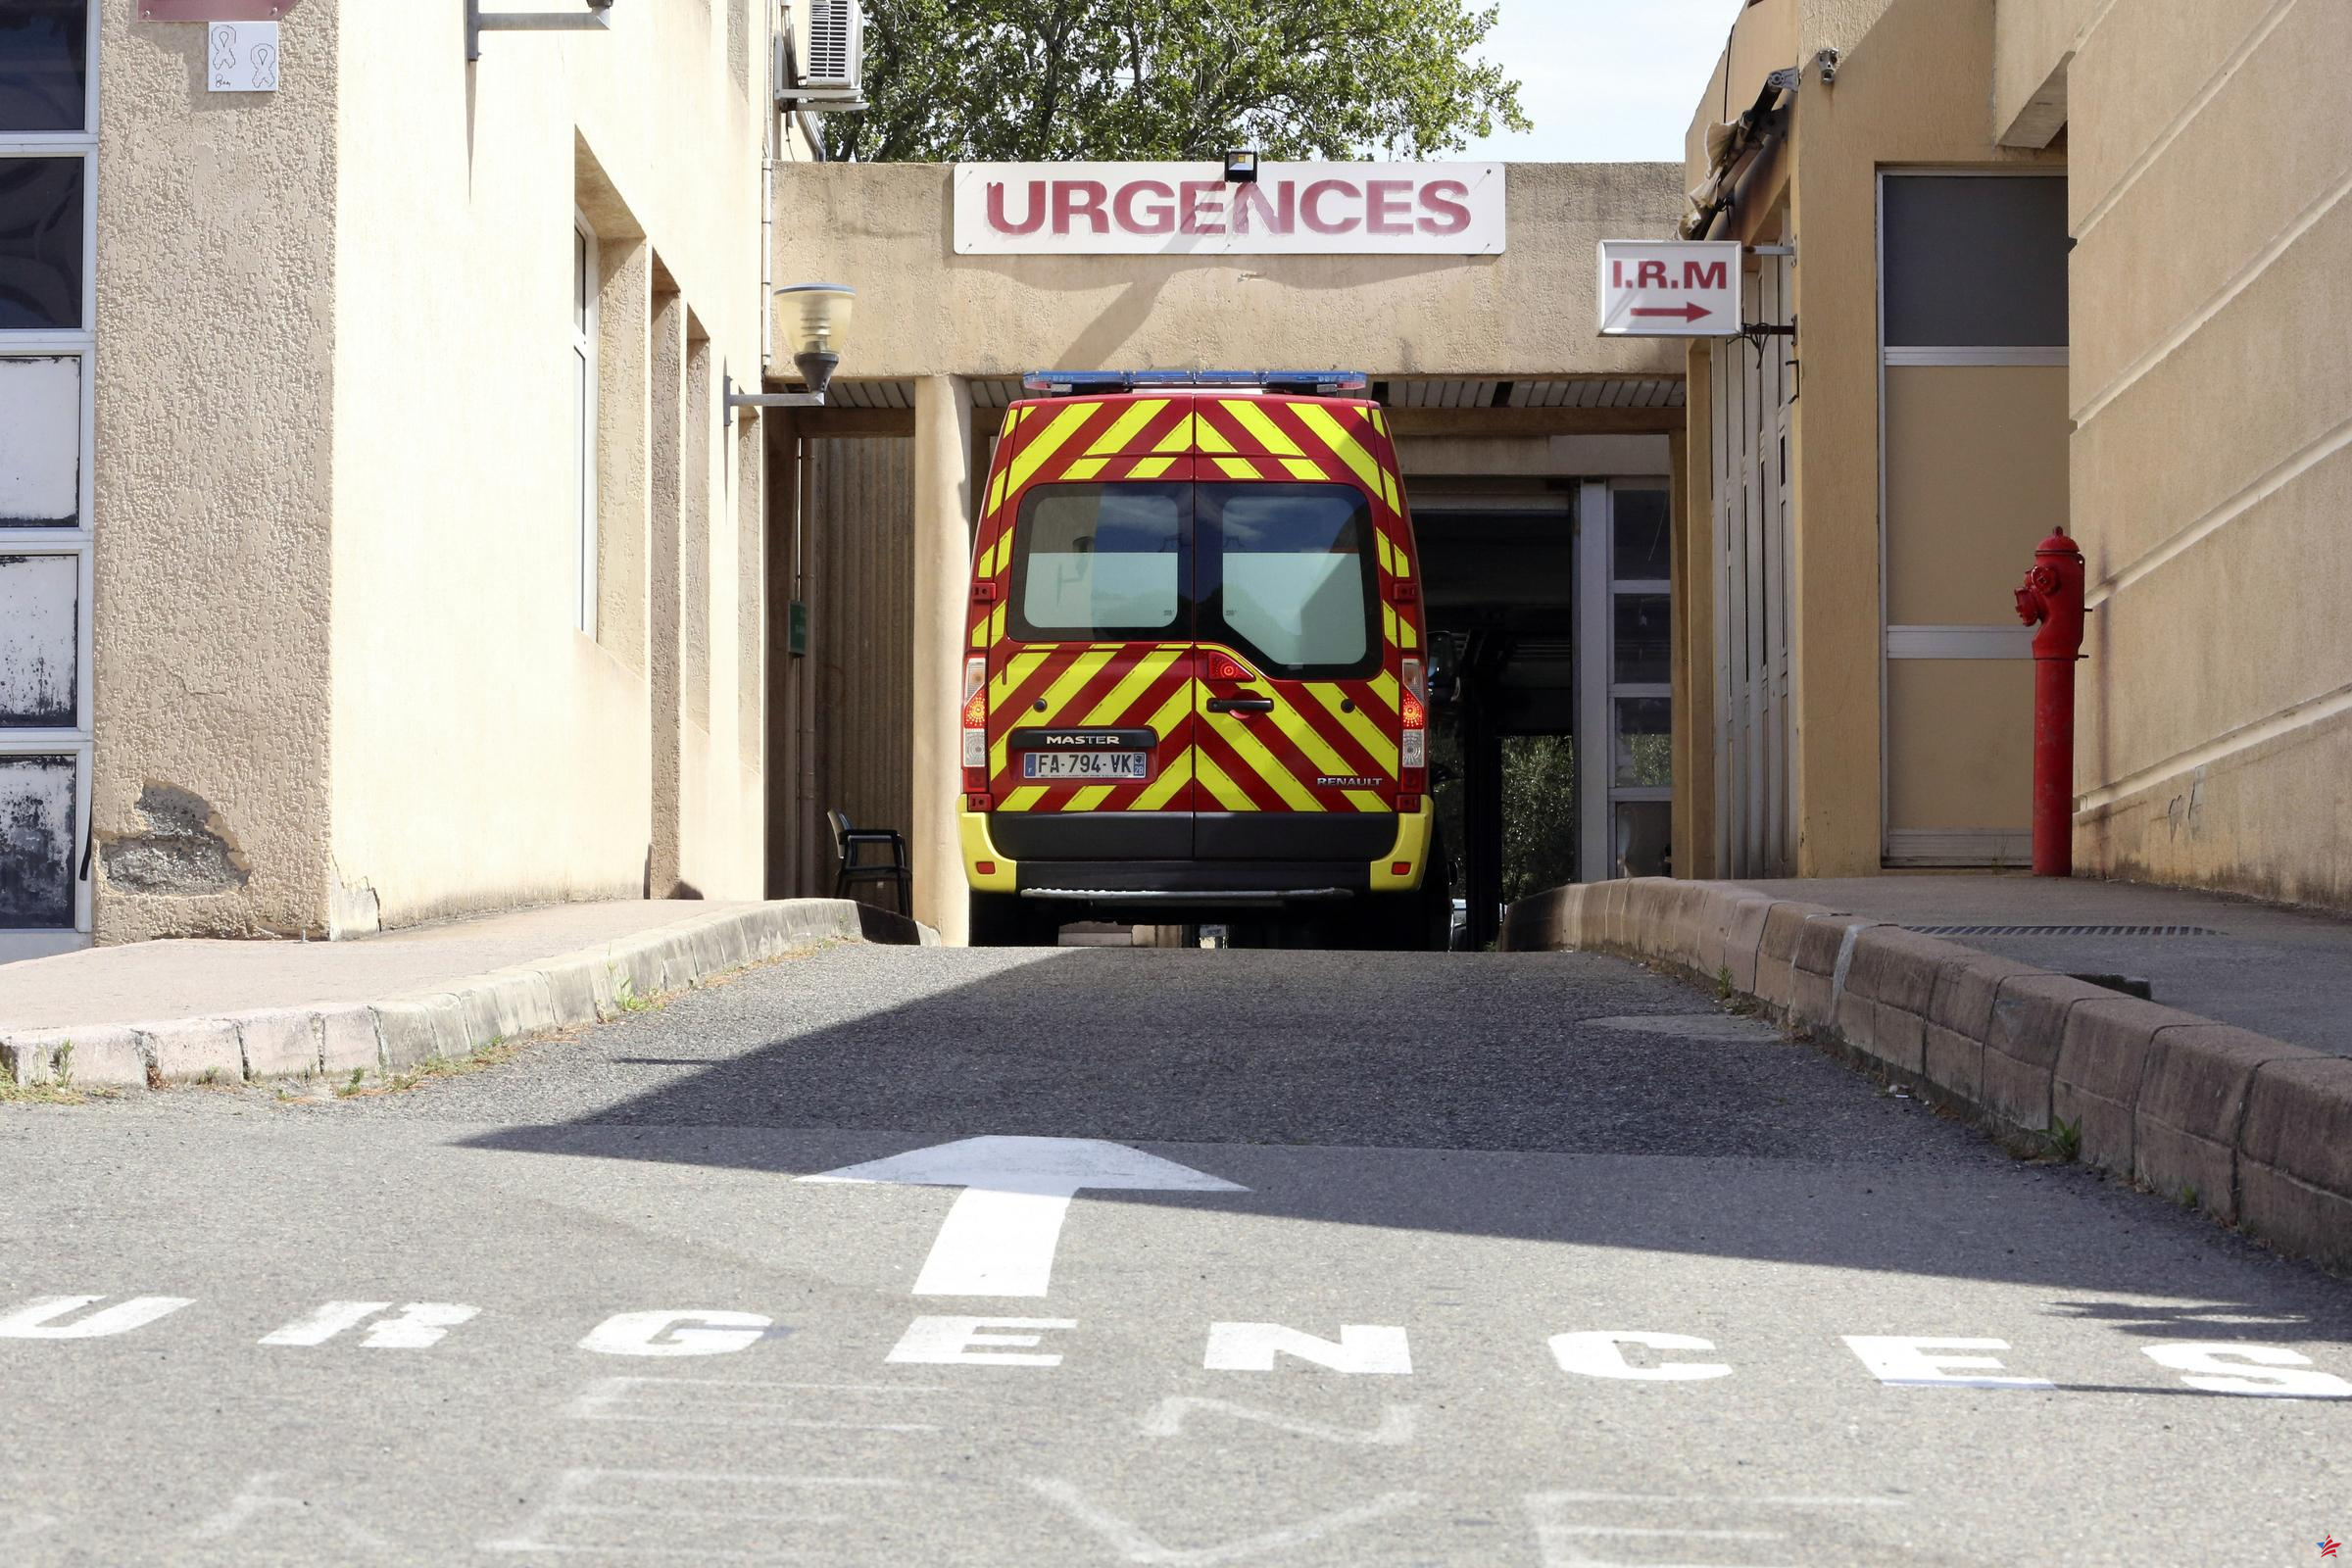 “Más de 1,5 horas de espera”: retrasos récord en las emergencias para los bomberos de Lyon